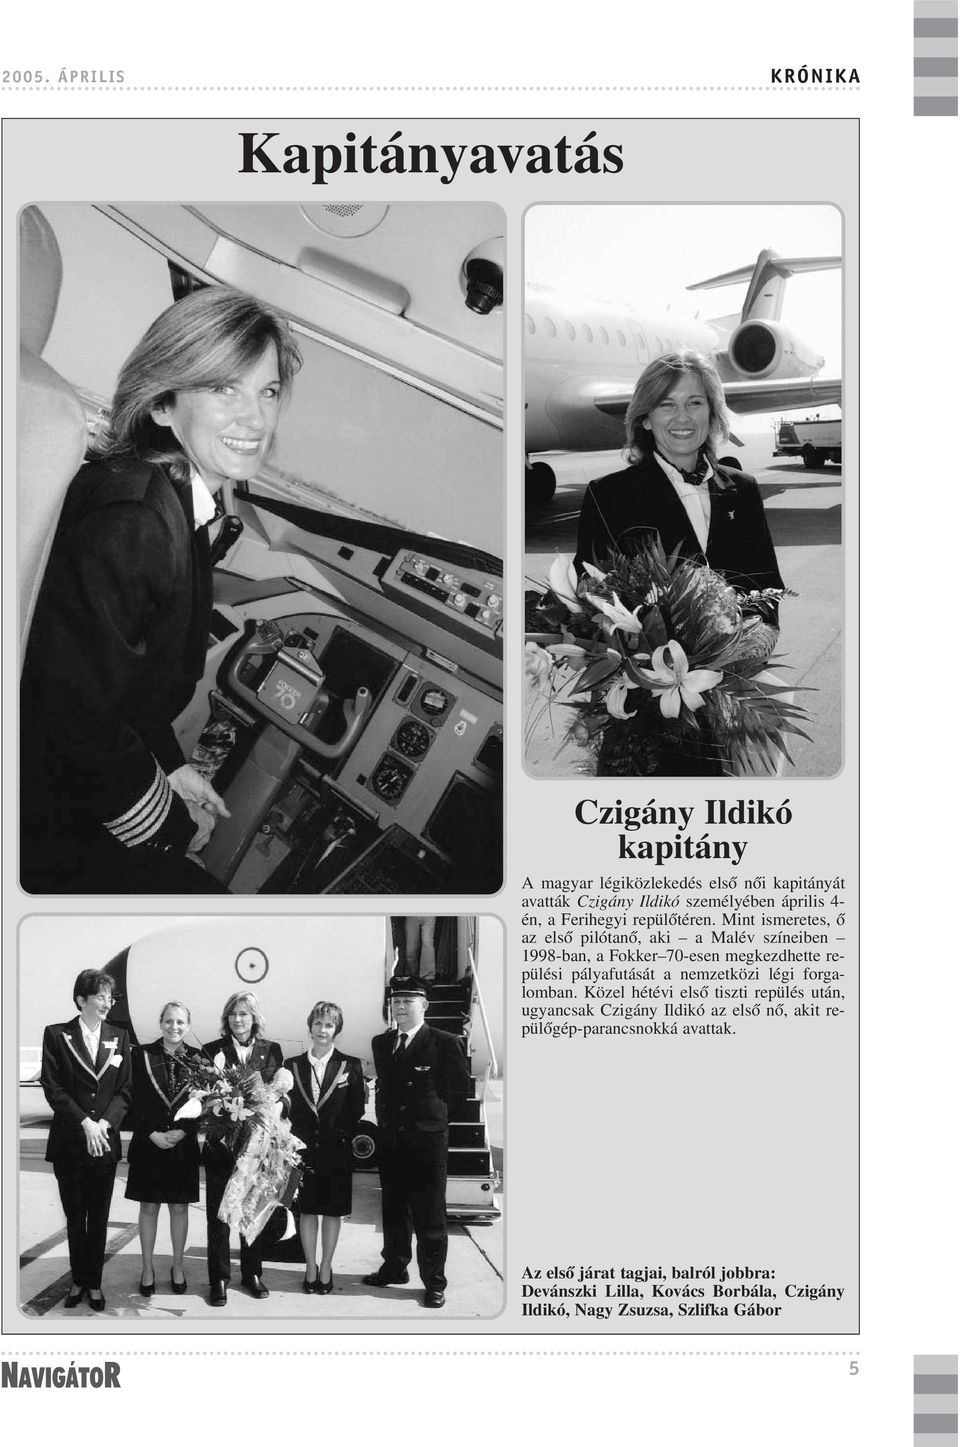 Mint ismeretes, õ az elsõ pilótanõ, aki a Malév színeiben 1998-ban, a Fokker 70-esen megkezdhette repülési pályafutását a nemzetközi légi